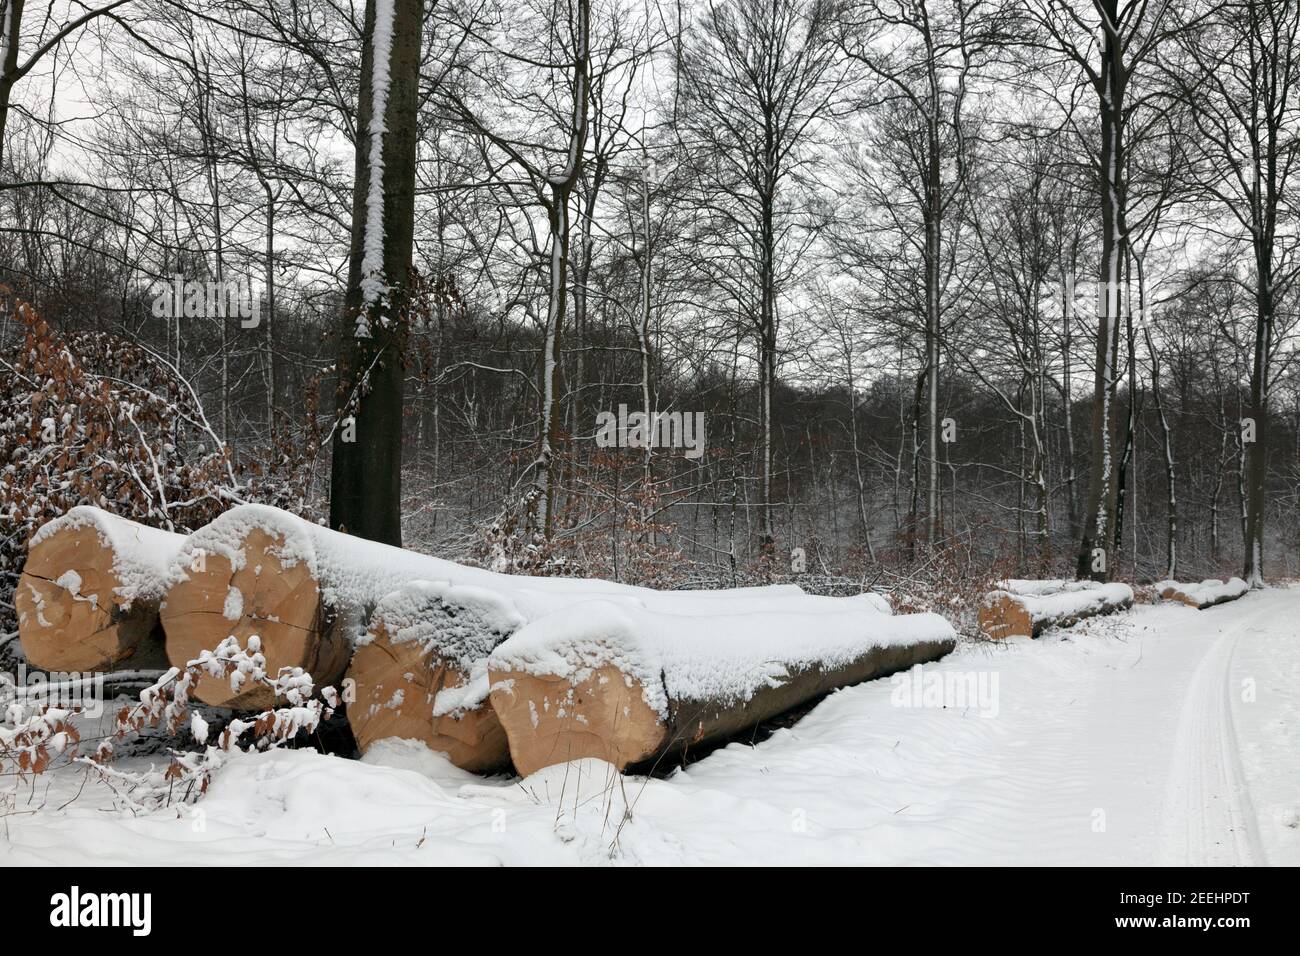 Invierno en el bosque Folehand en North Sealand, Dinamarca. Troncos cubiertos de nieve a lo largo del camino de madera. Haya. Árboles desnudos y hojas muertas de haya con nieve. Foto de stock